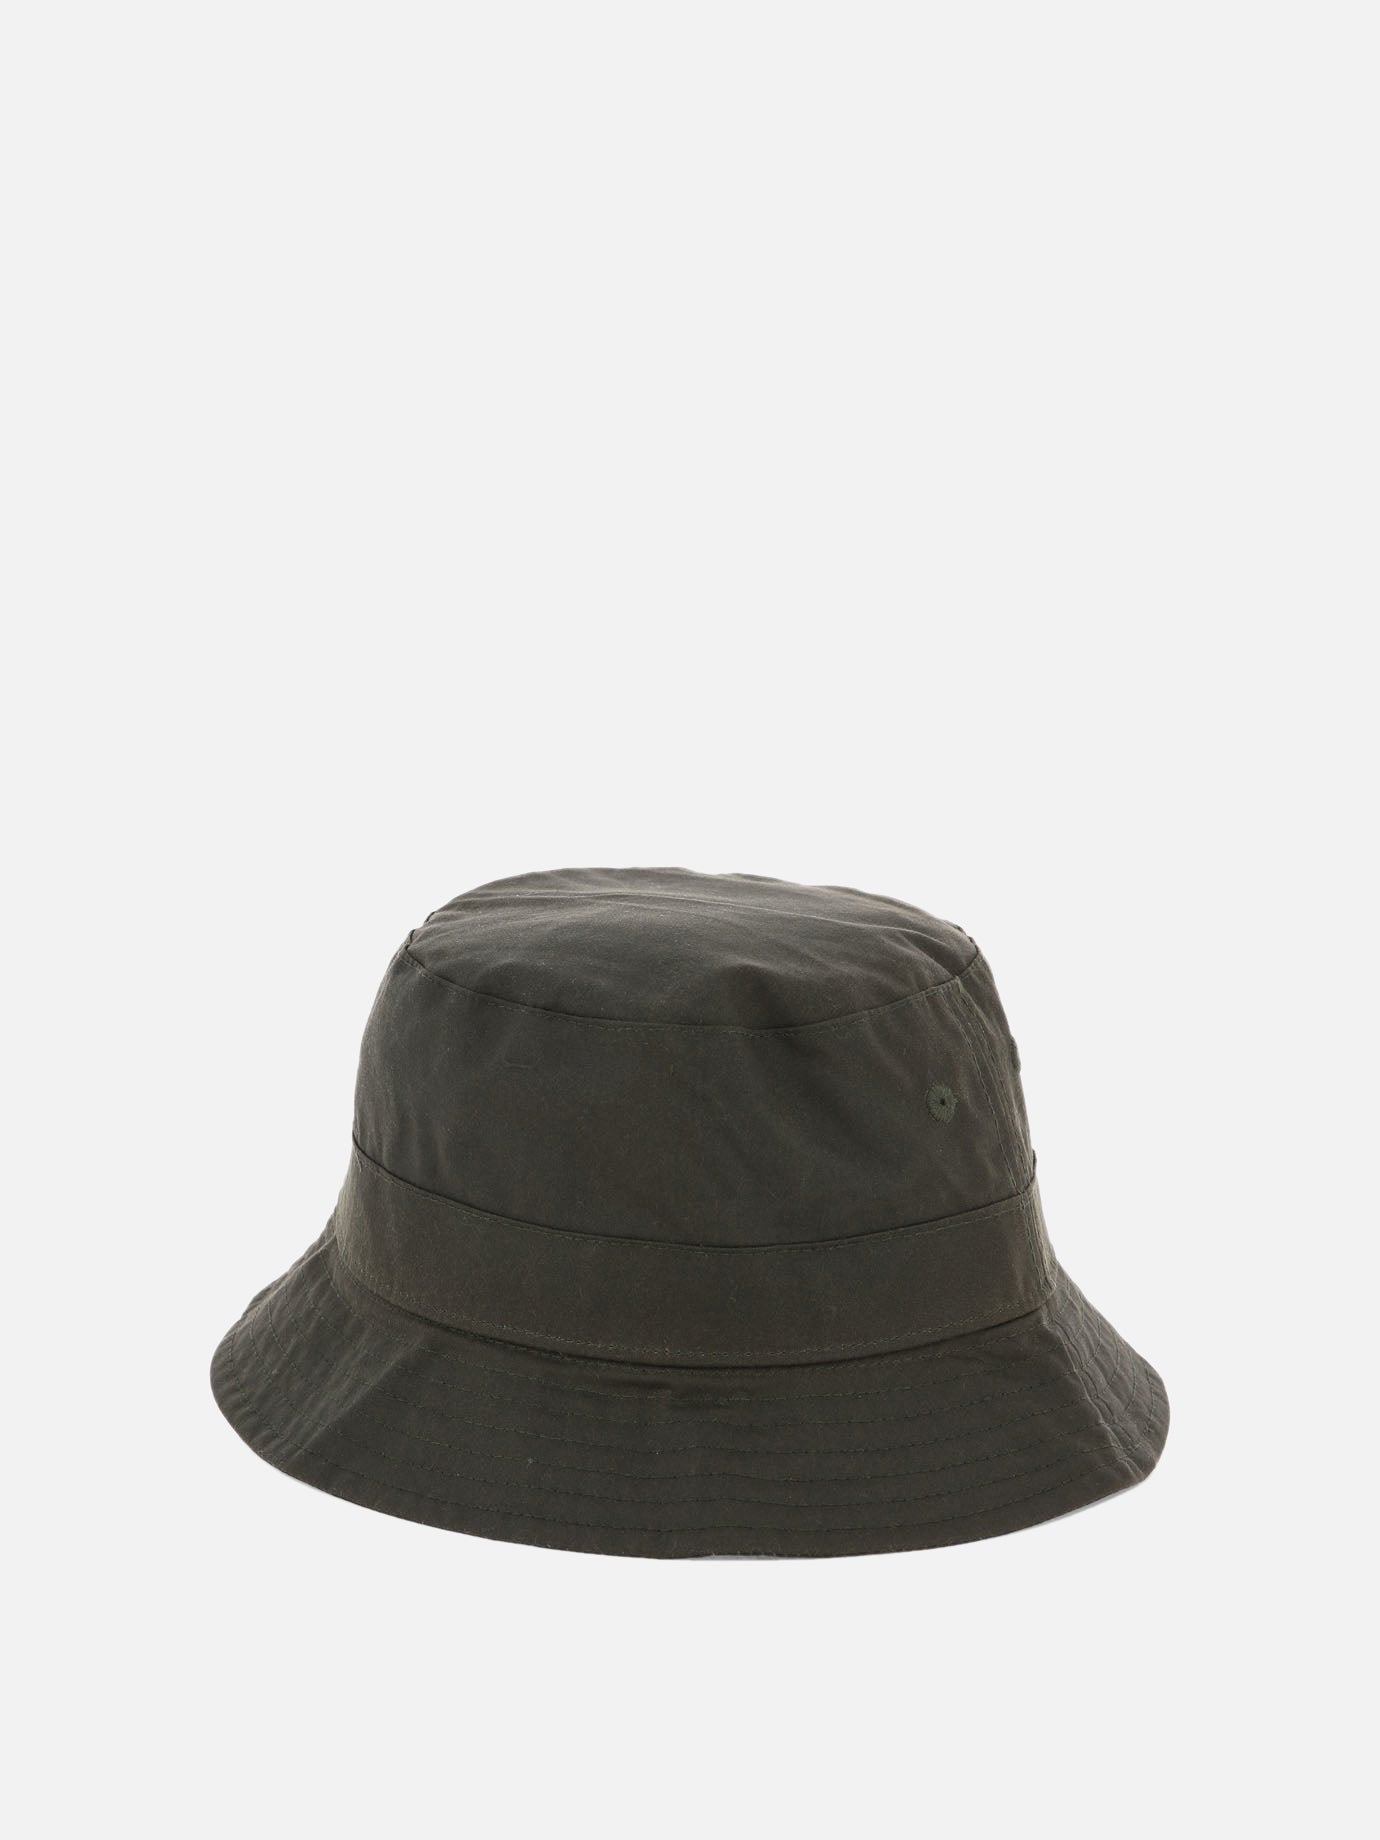 "BELSAY WAX" hat